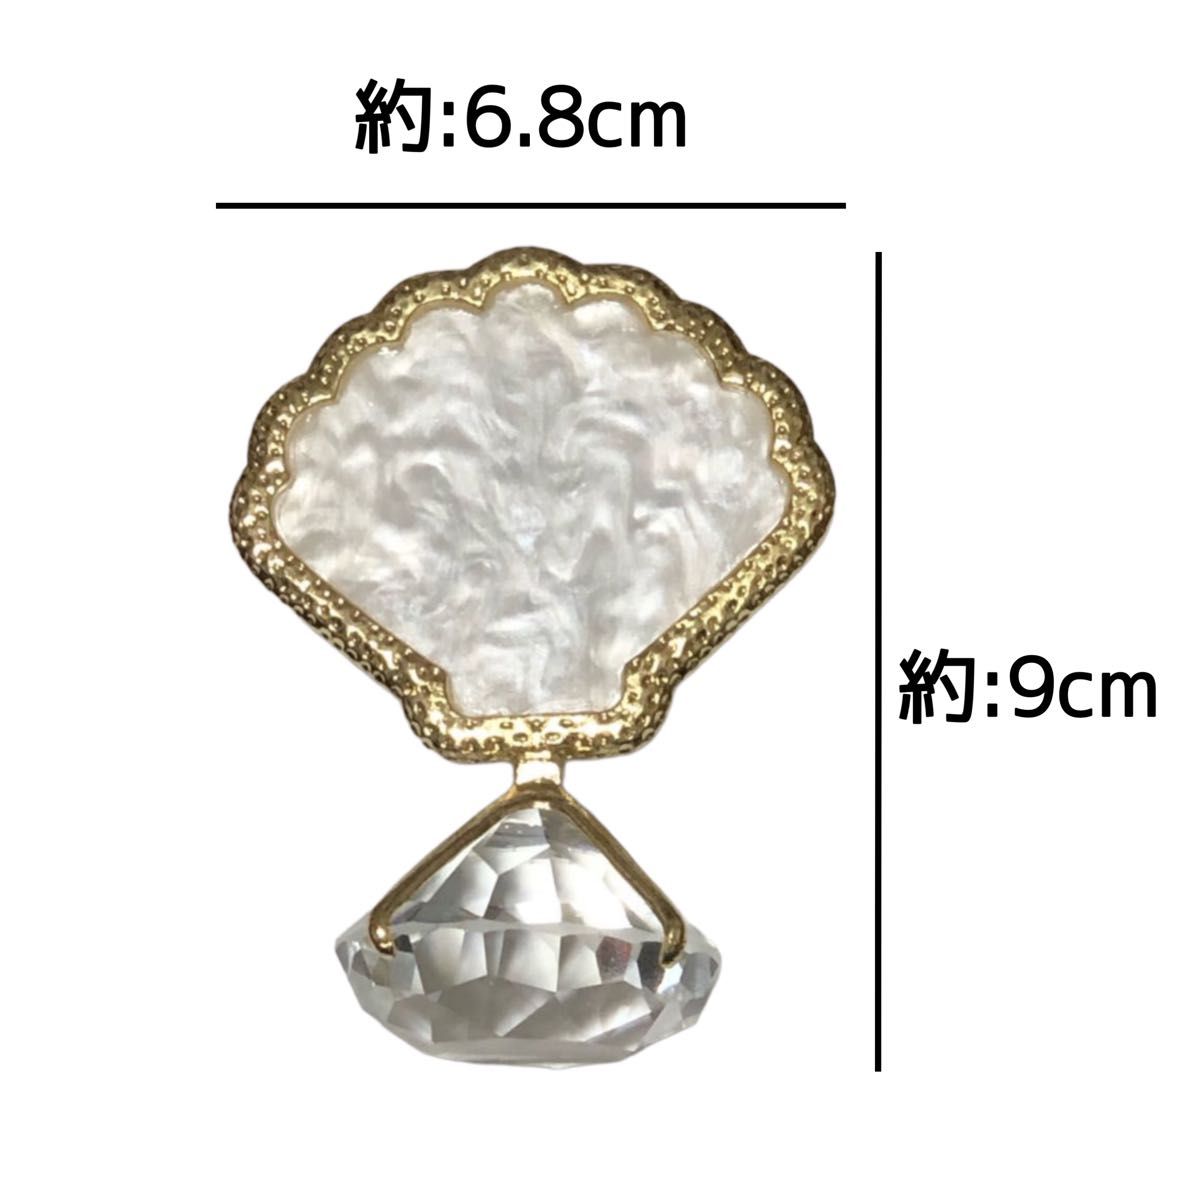 ホワイト ダイヤモンド ネイル パレット 天然石風 ネイルパレット 撮影用 プレート コースター マツエク グルー トレイ 貝殻